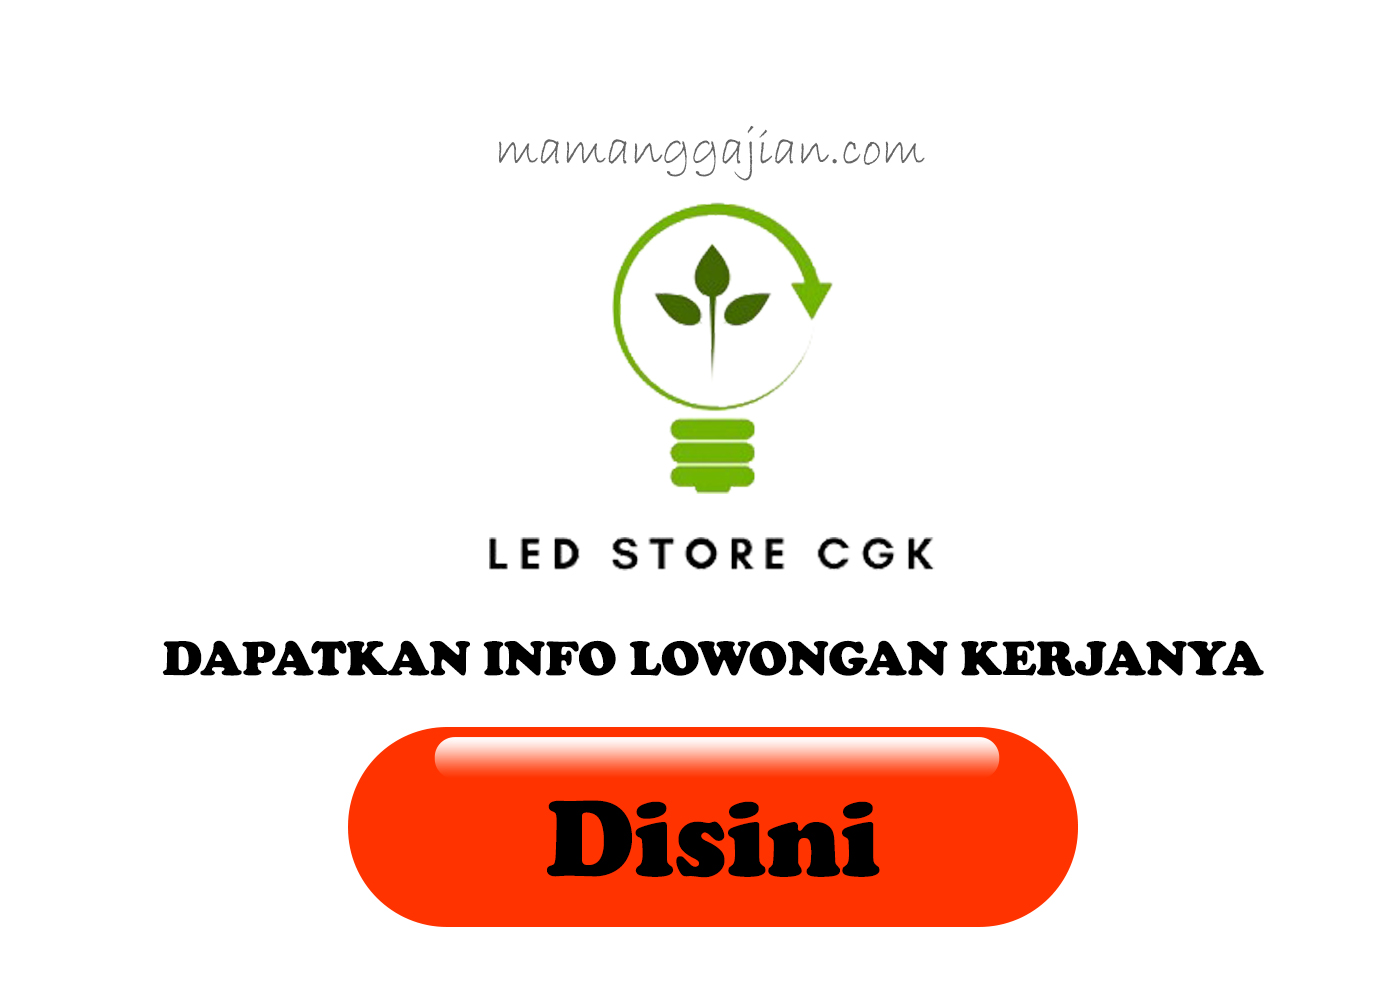 Gaji dan Lowongan Ledstorecgk Online Store Lampu LED